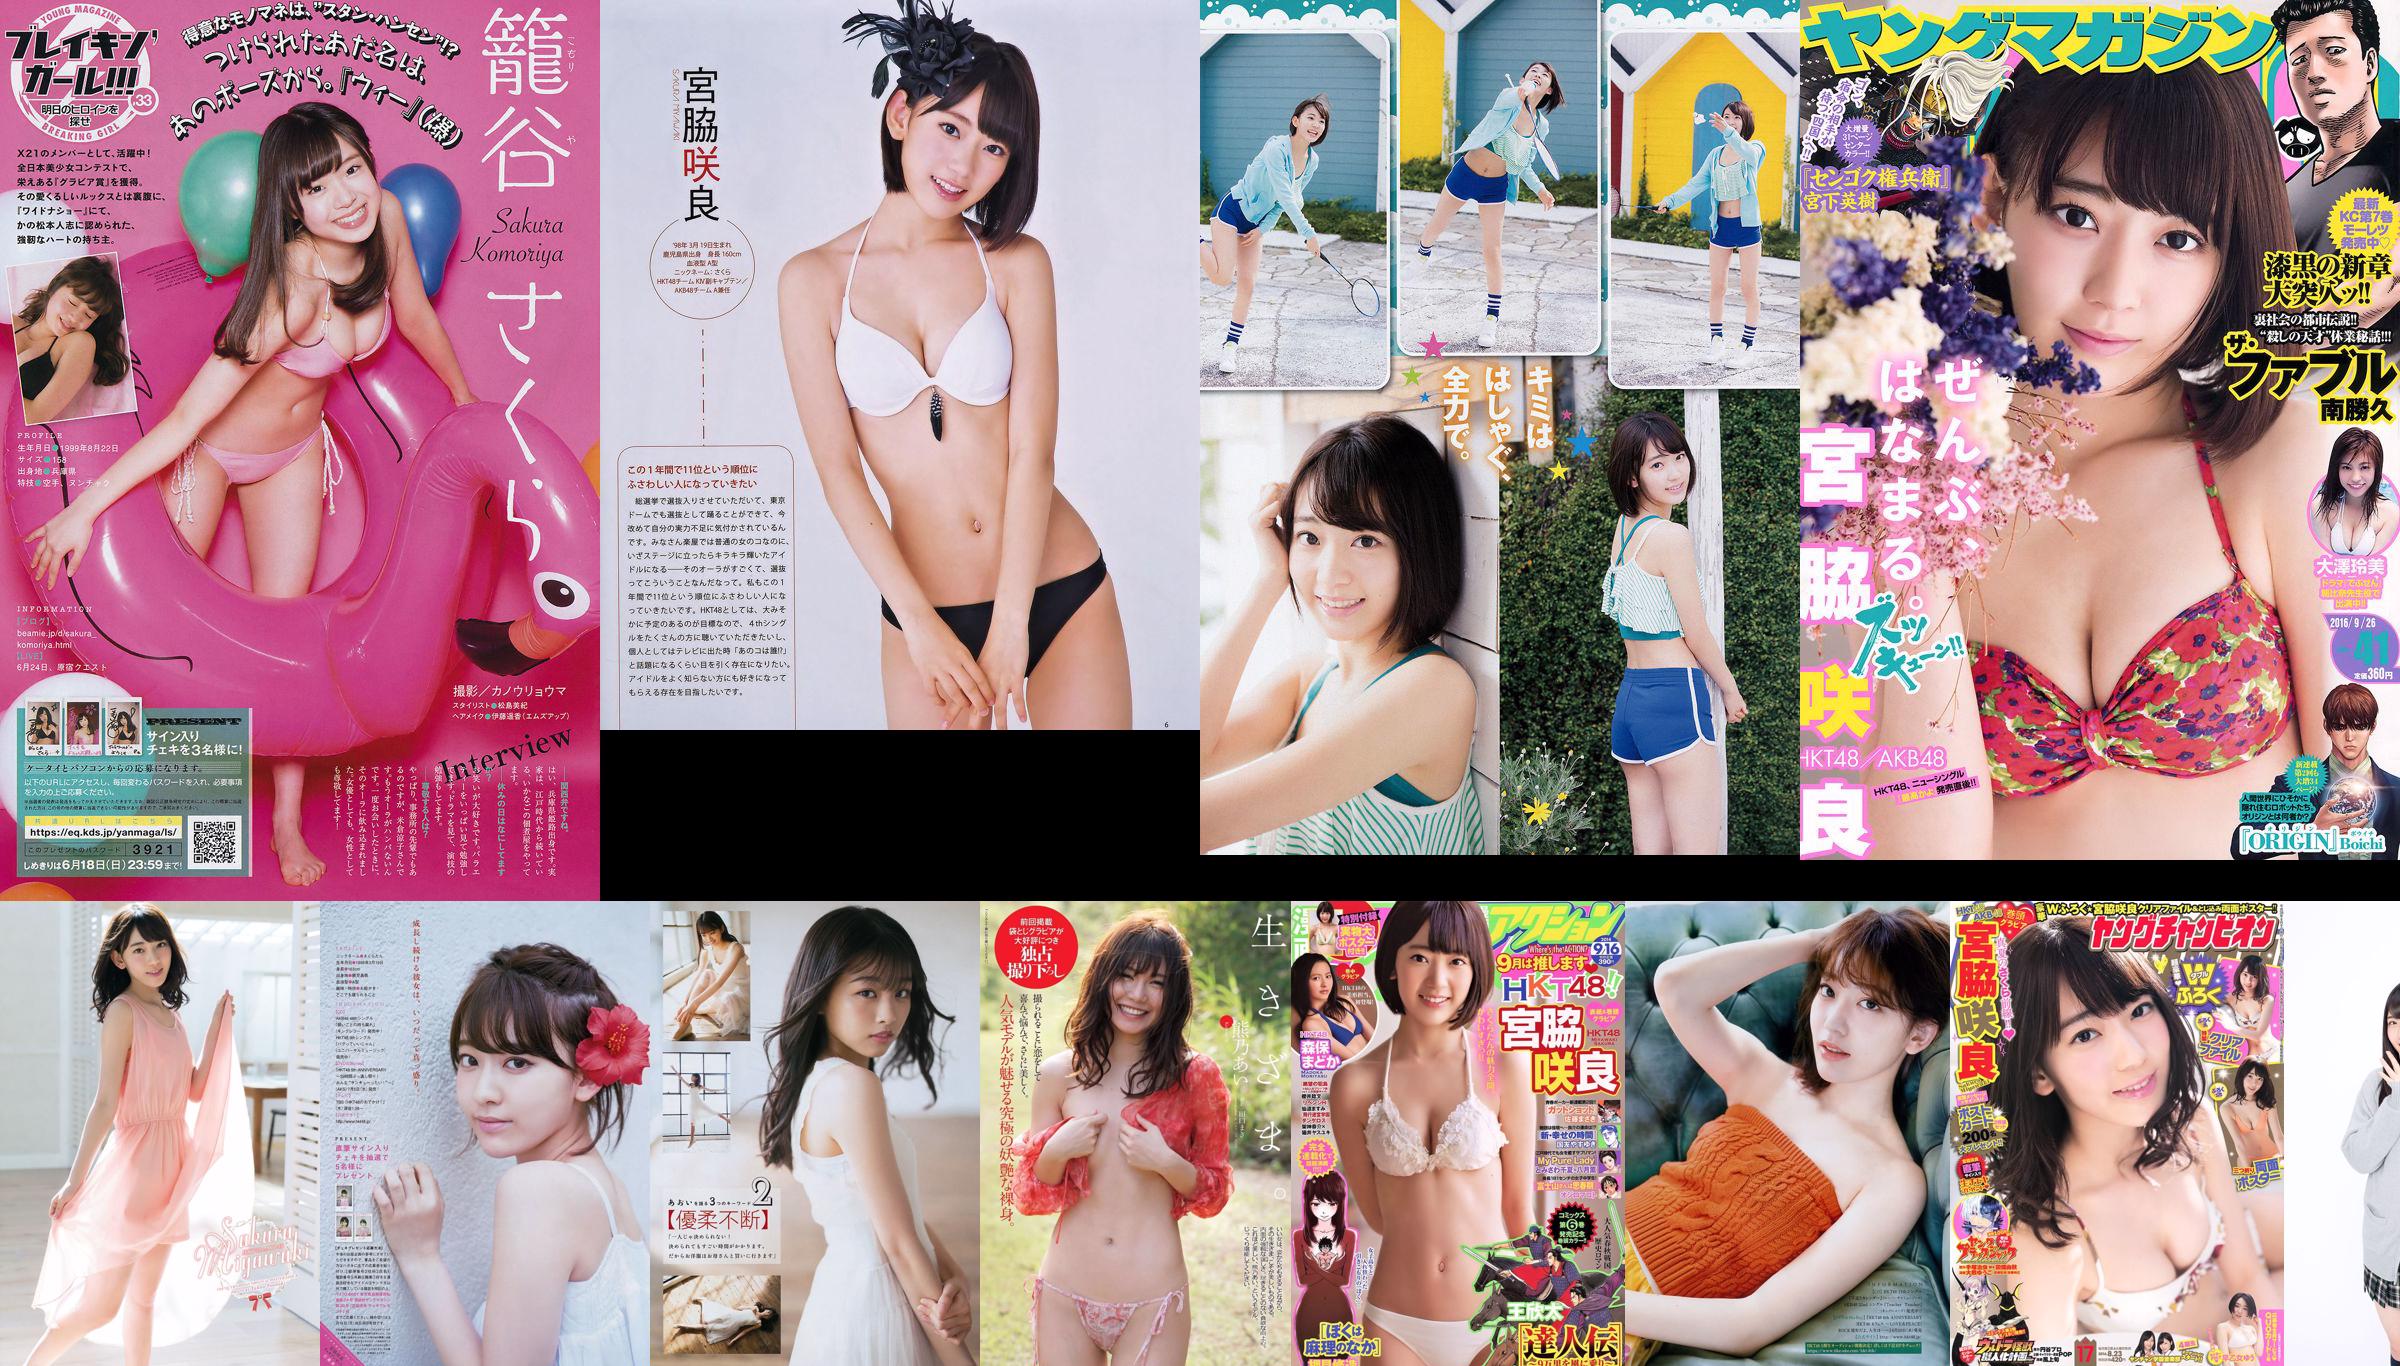 [Manga Action] Miyawaki Sakura 2014 No.18 Photo Magazine No.03cdac Page 3